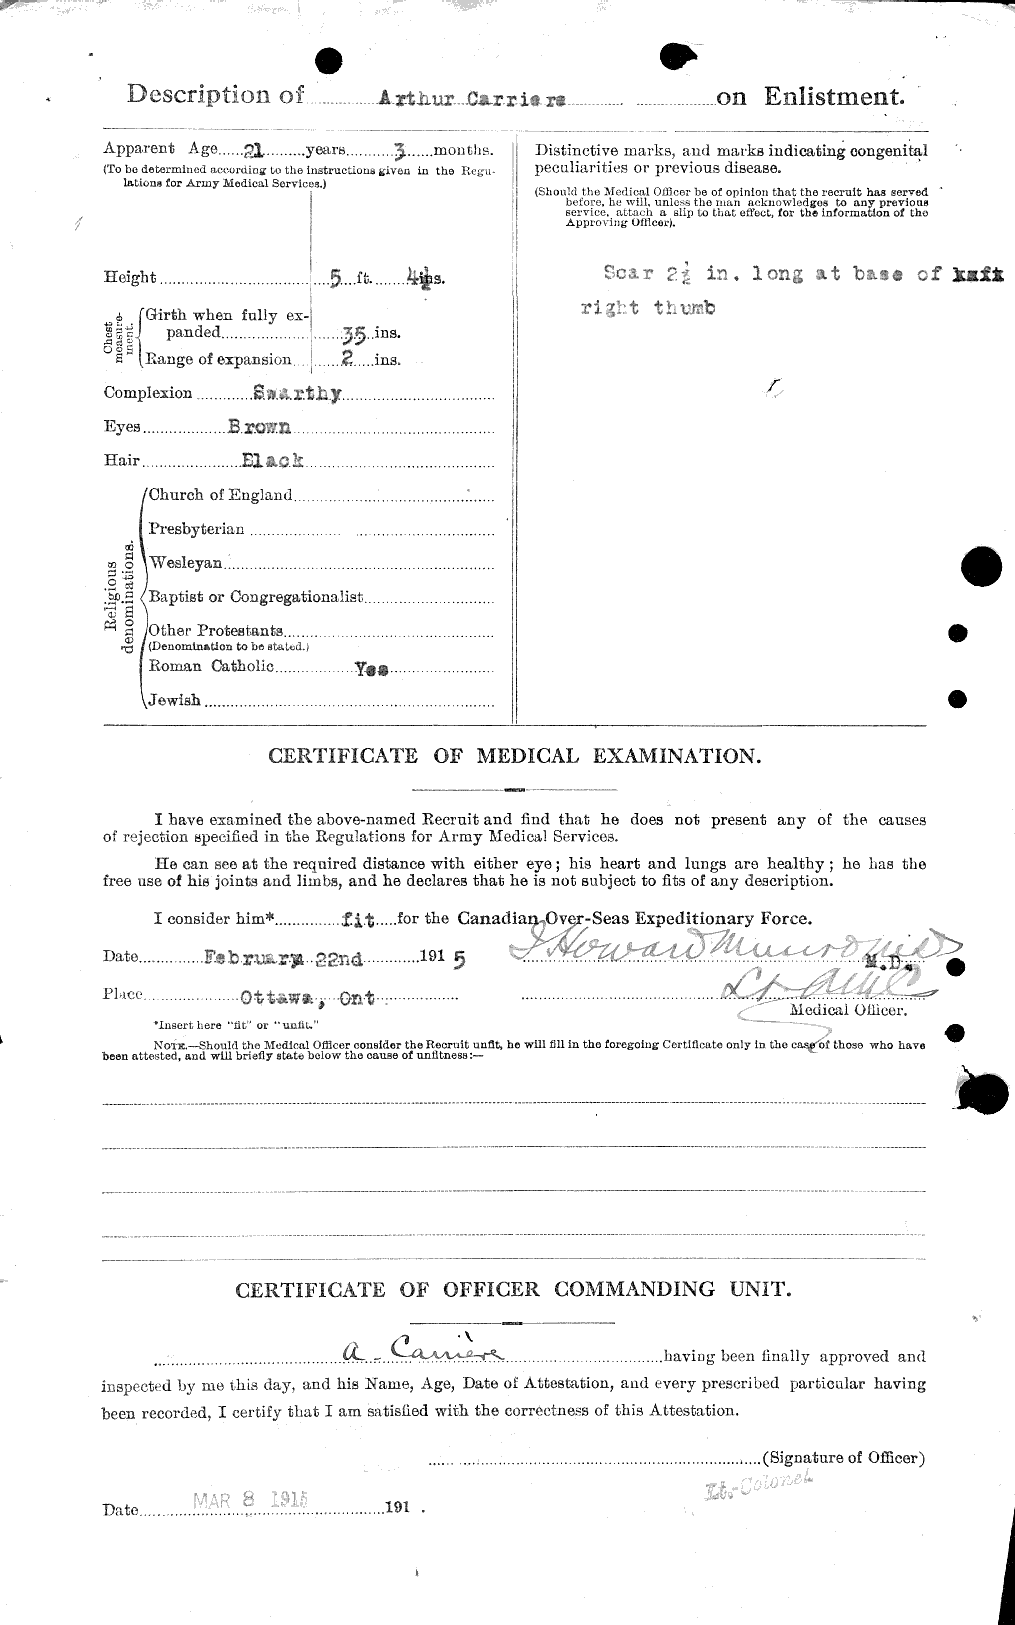 Dossiers du Personnel de la Première Guerre mondiale - CEC 011359b